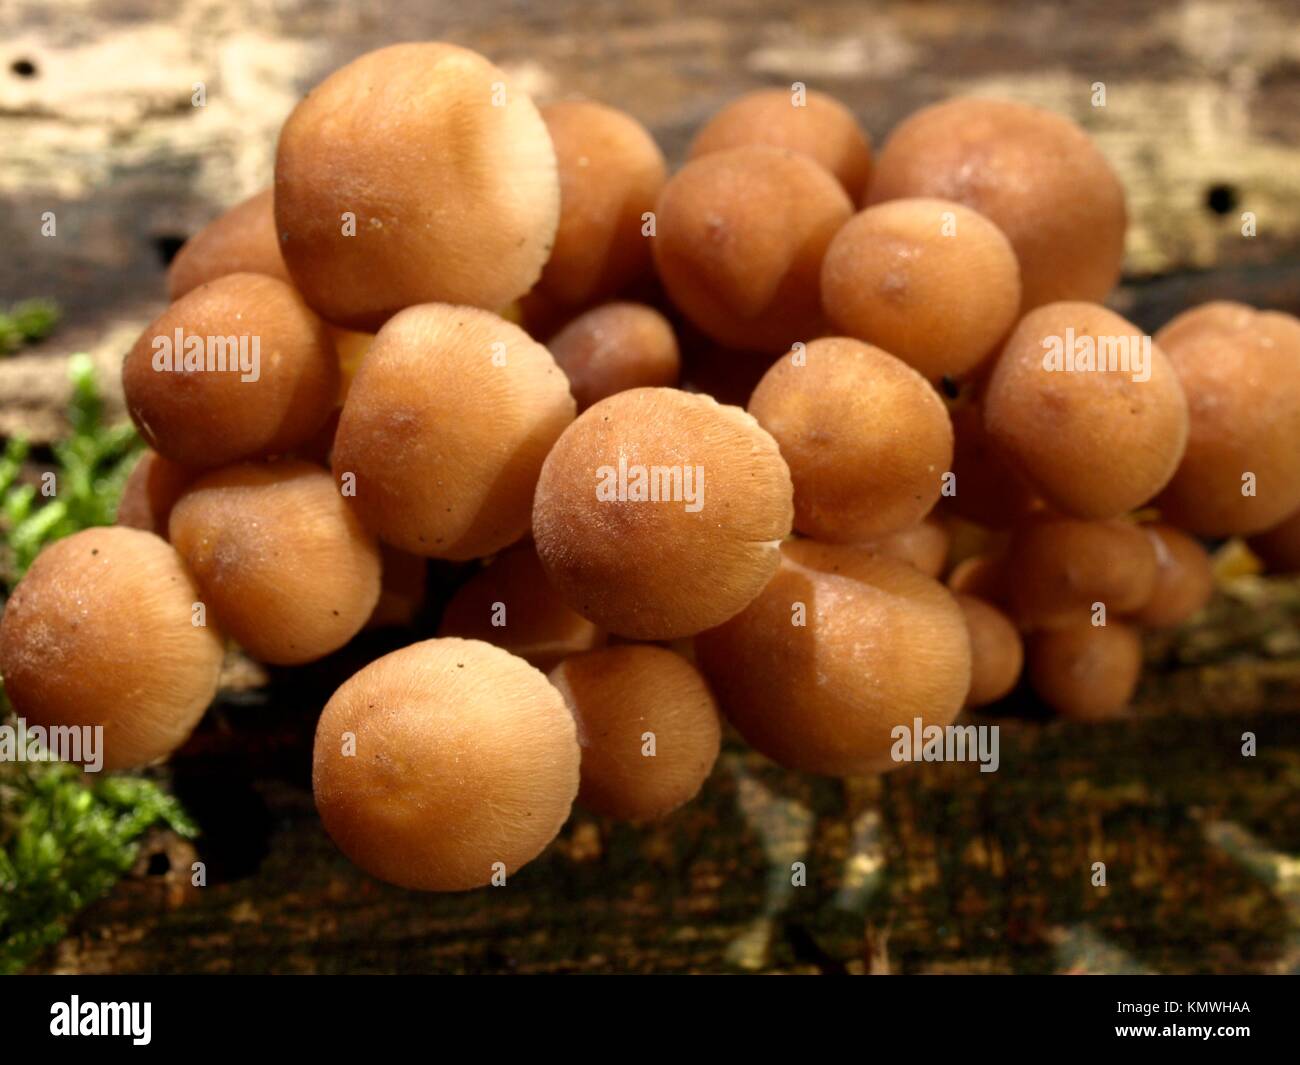 coprinus micaceus mushroom in autumn in la rioja spain Stock Photo